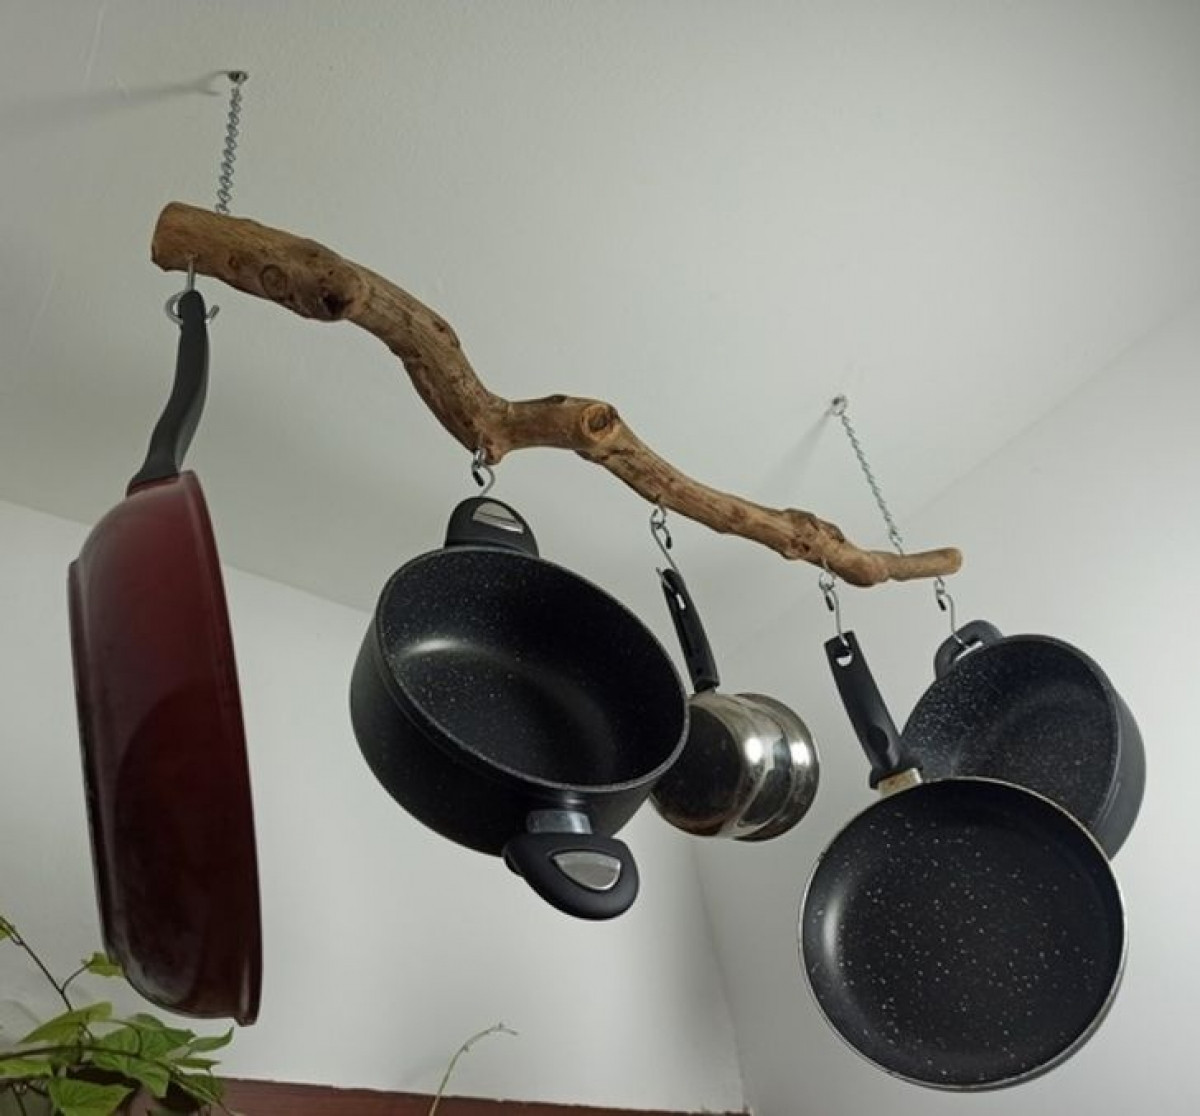 Khi bạn đi thuê một căn hộ và tủ bếp quá nhỏ thì đây là ý tưởng vô cùng sáng tạo.